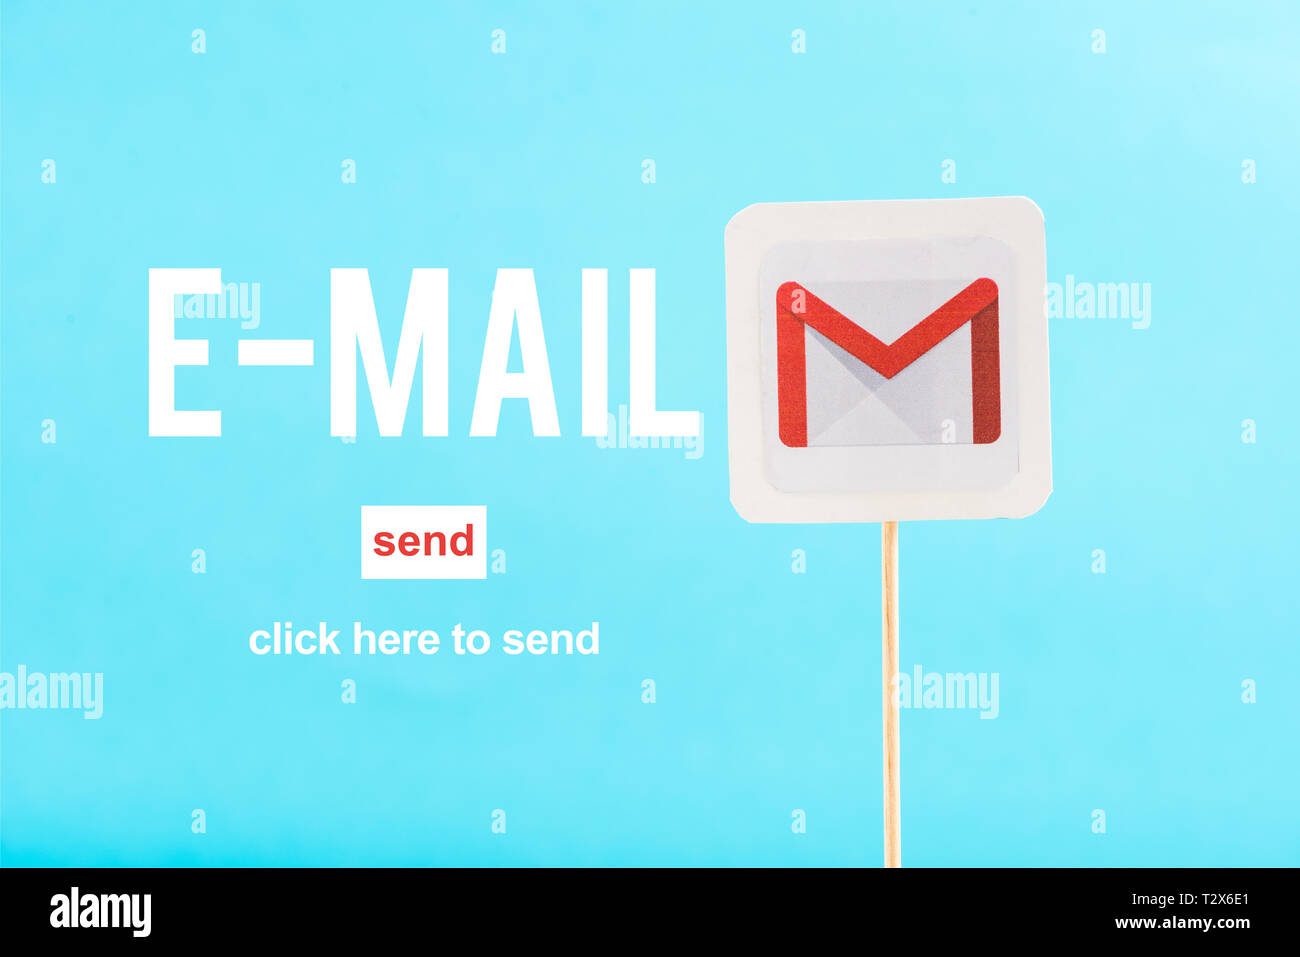 Carte avec le logo de gmail, le courrier électronique et envoyer des mots isolés sur blue Banque D'Images